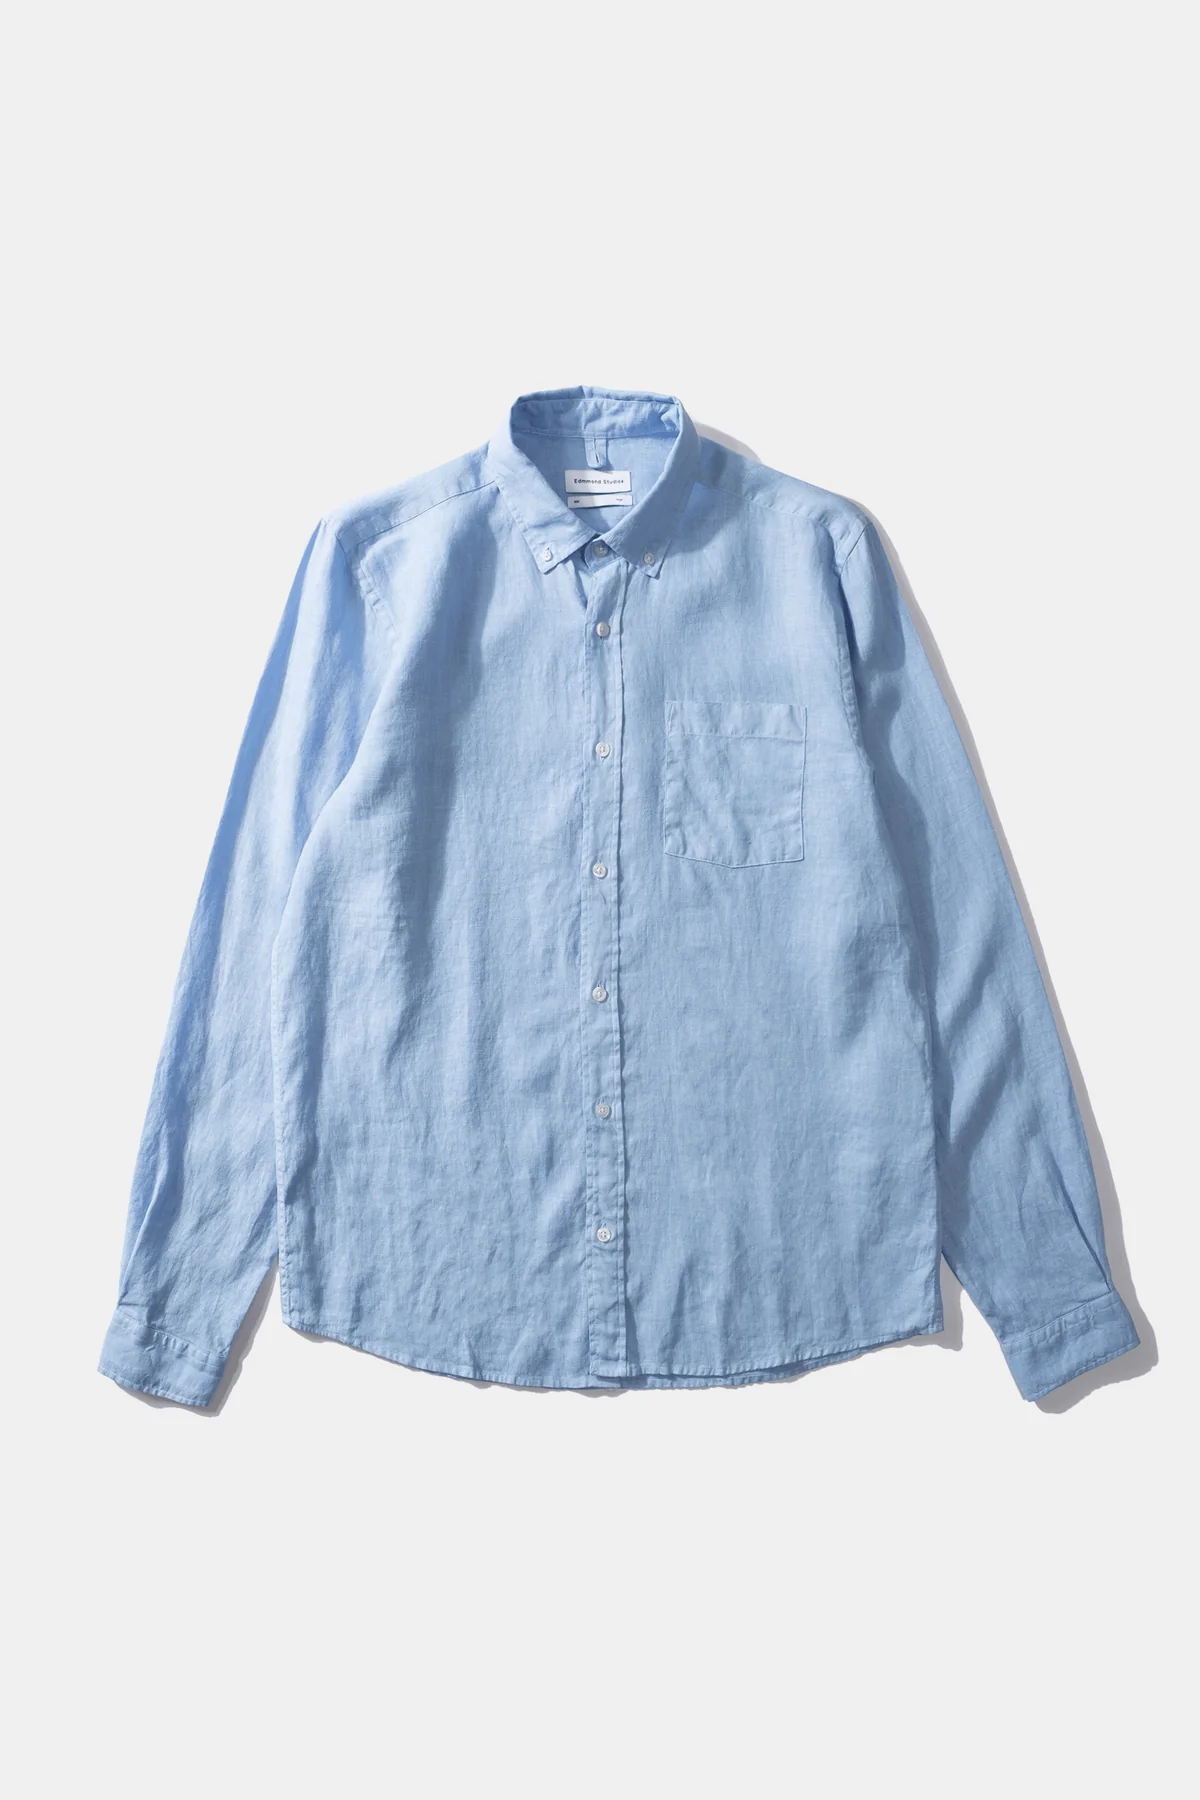 Edmmond Studios L/S Linen Shirt - Light Blue